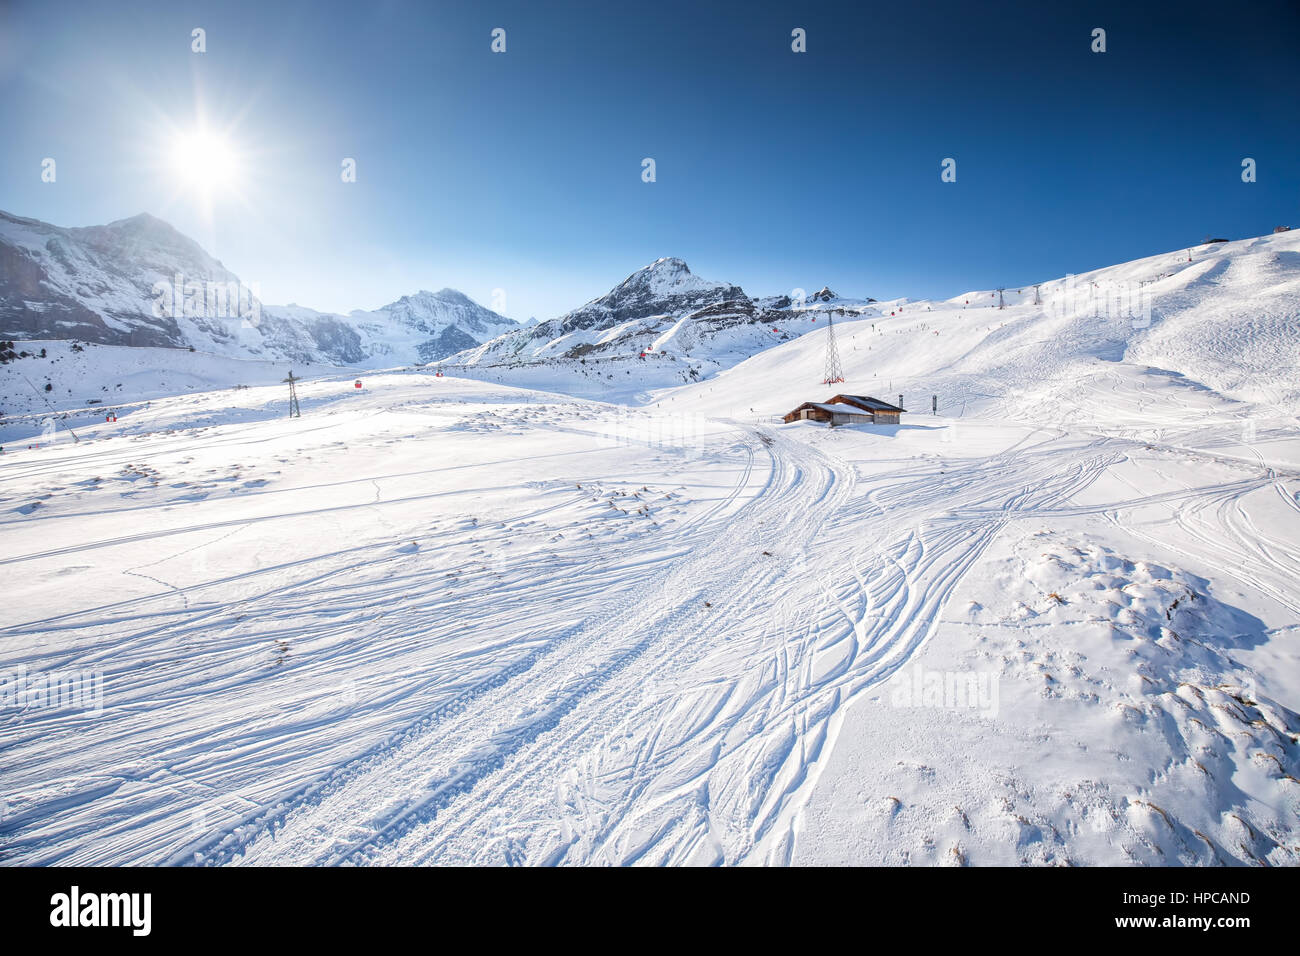 Jungfrau ski Resort mit berühmten Eiger, Monch und Jungfrau Gipfeln in Grindelwald, Berner Oberland, Schweiz, Schweizer Alpen. Stockfoto